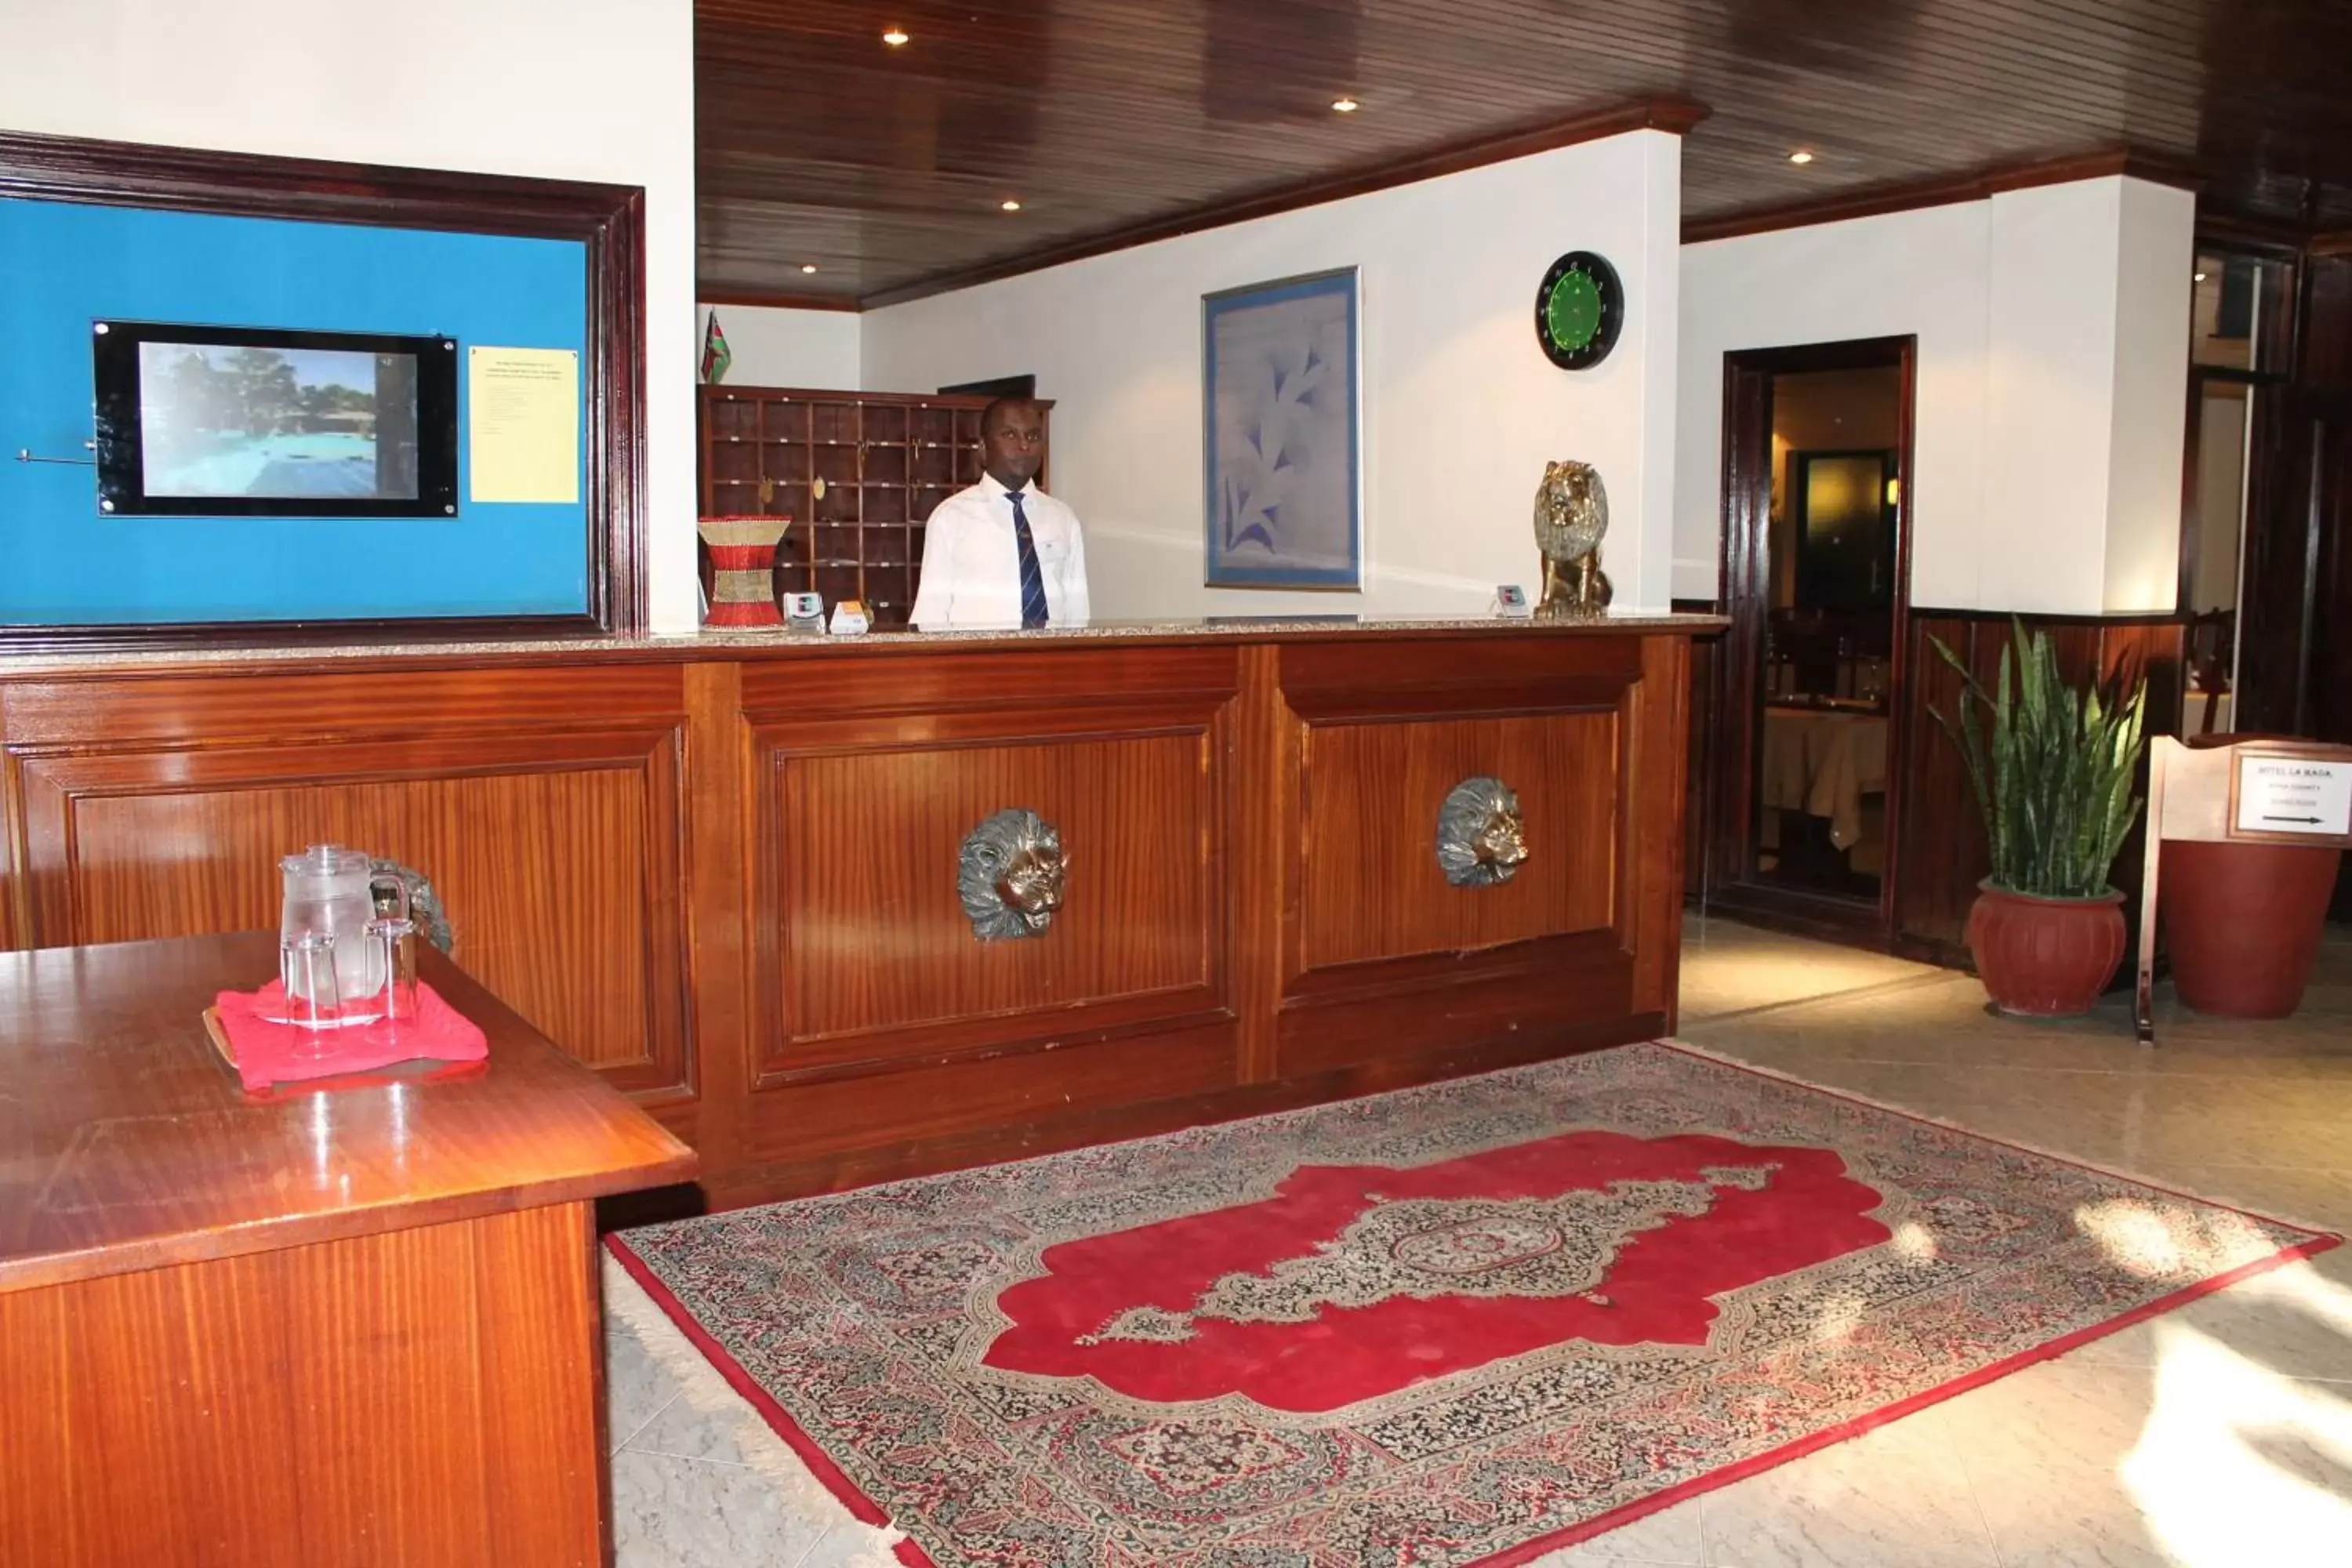 Lobby or reception, Lobby/Reception in La Mada Hotel